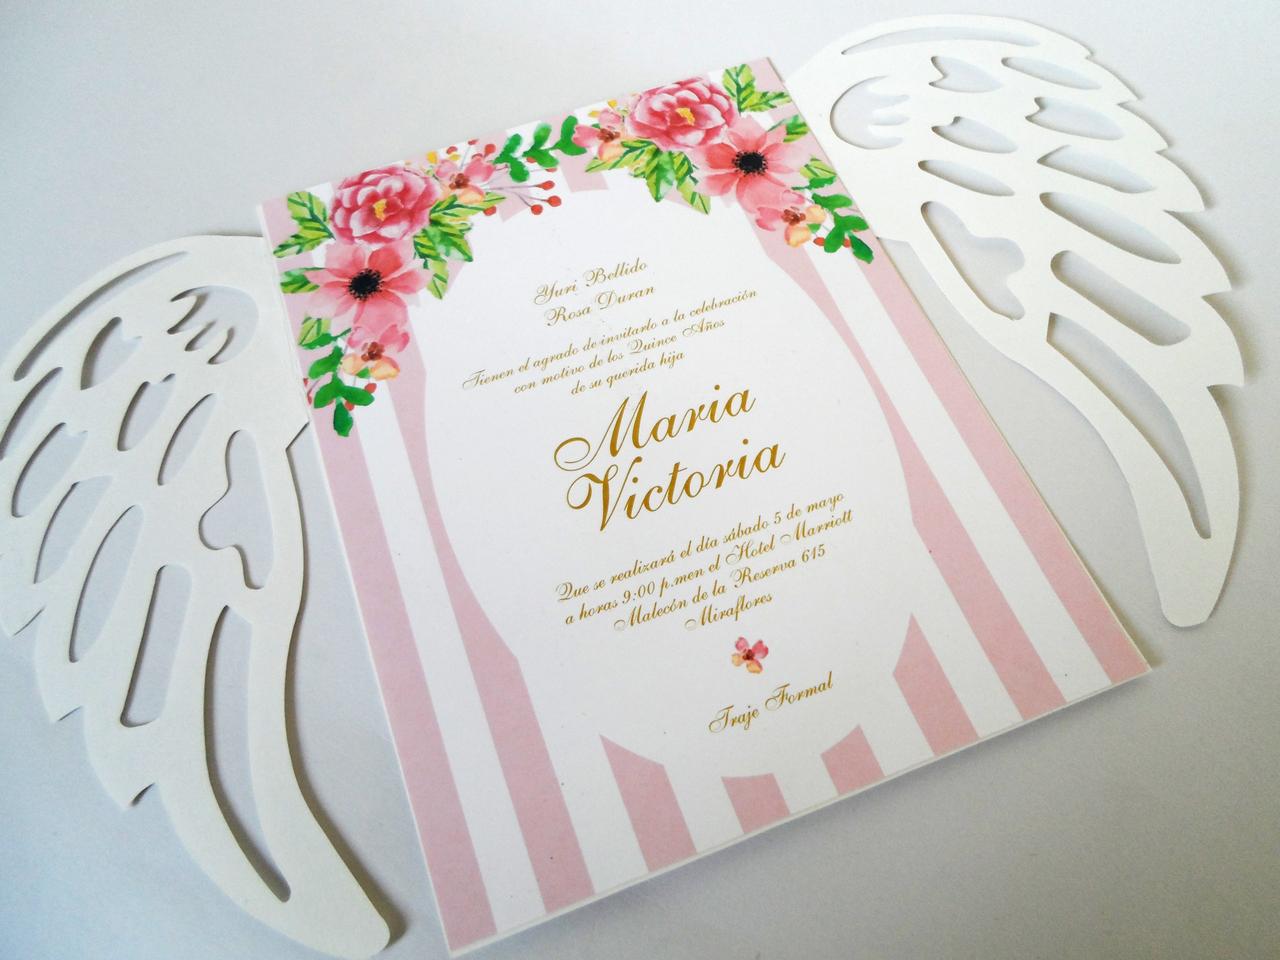 tarjeta de matrimonio civil con decoración floral y patrones verticales en rosa y alas de ángel